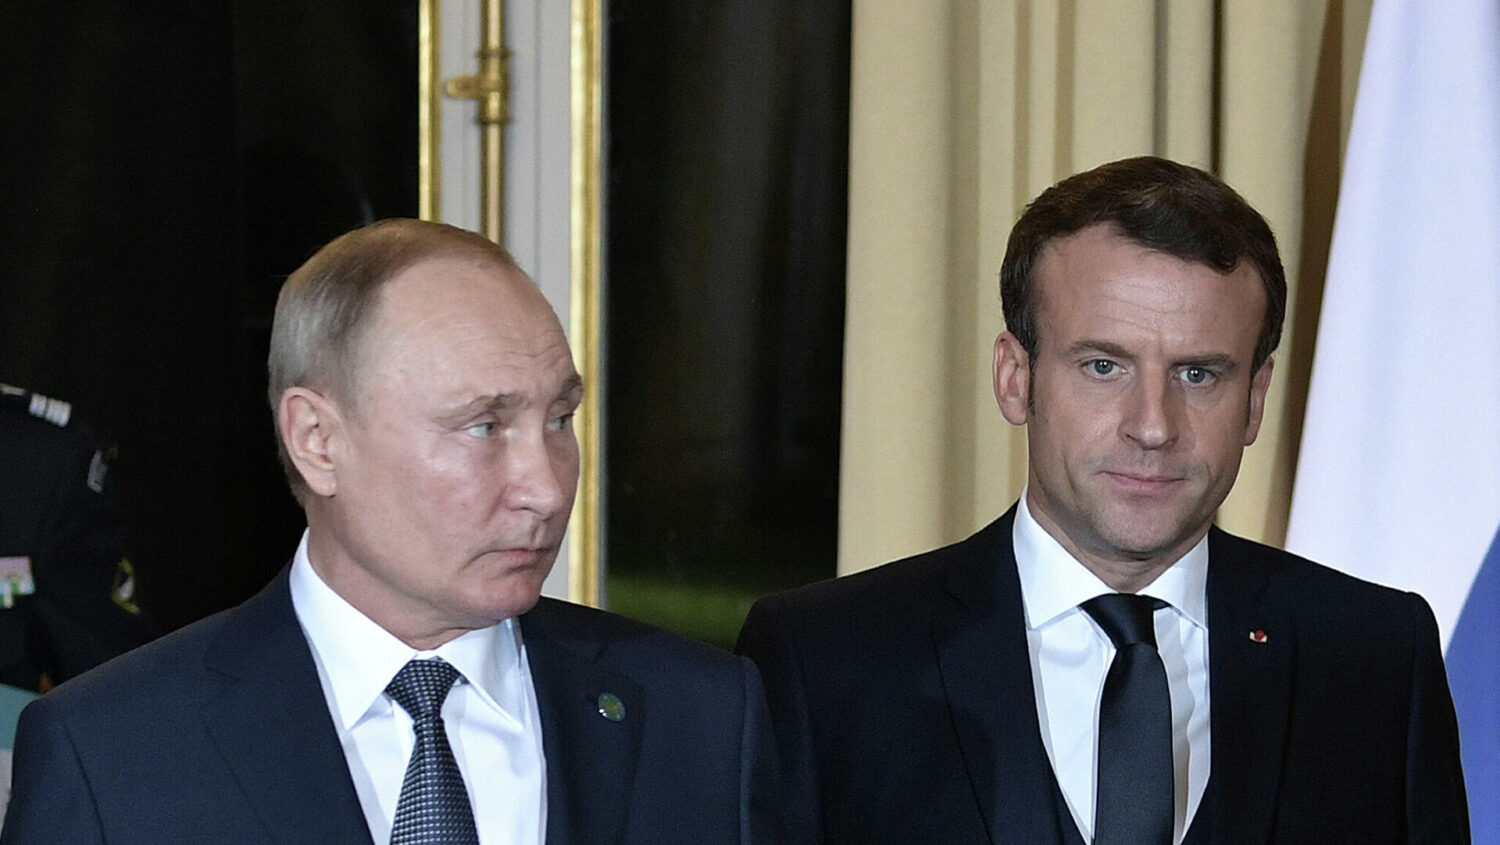 Ֆրանսիայի նախագահը Պուտինի հետ քննարկել է Լեռնային Ղարաբաղի կարգավորման հարցը